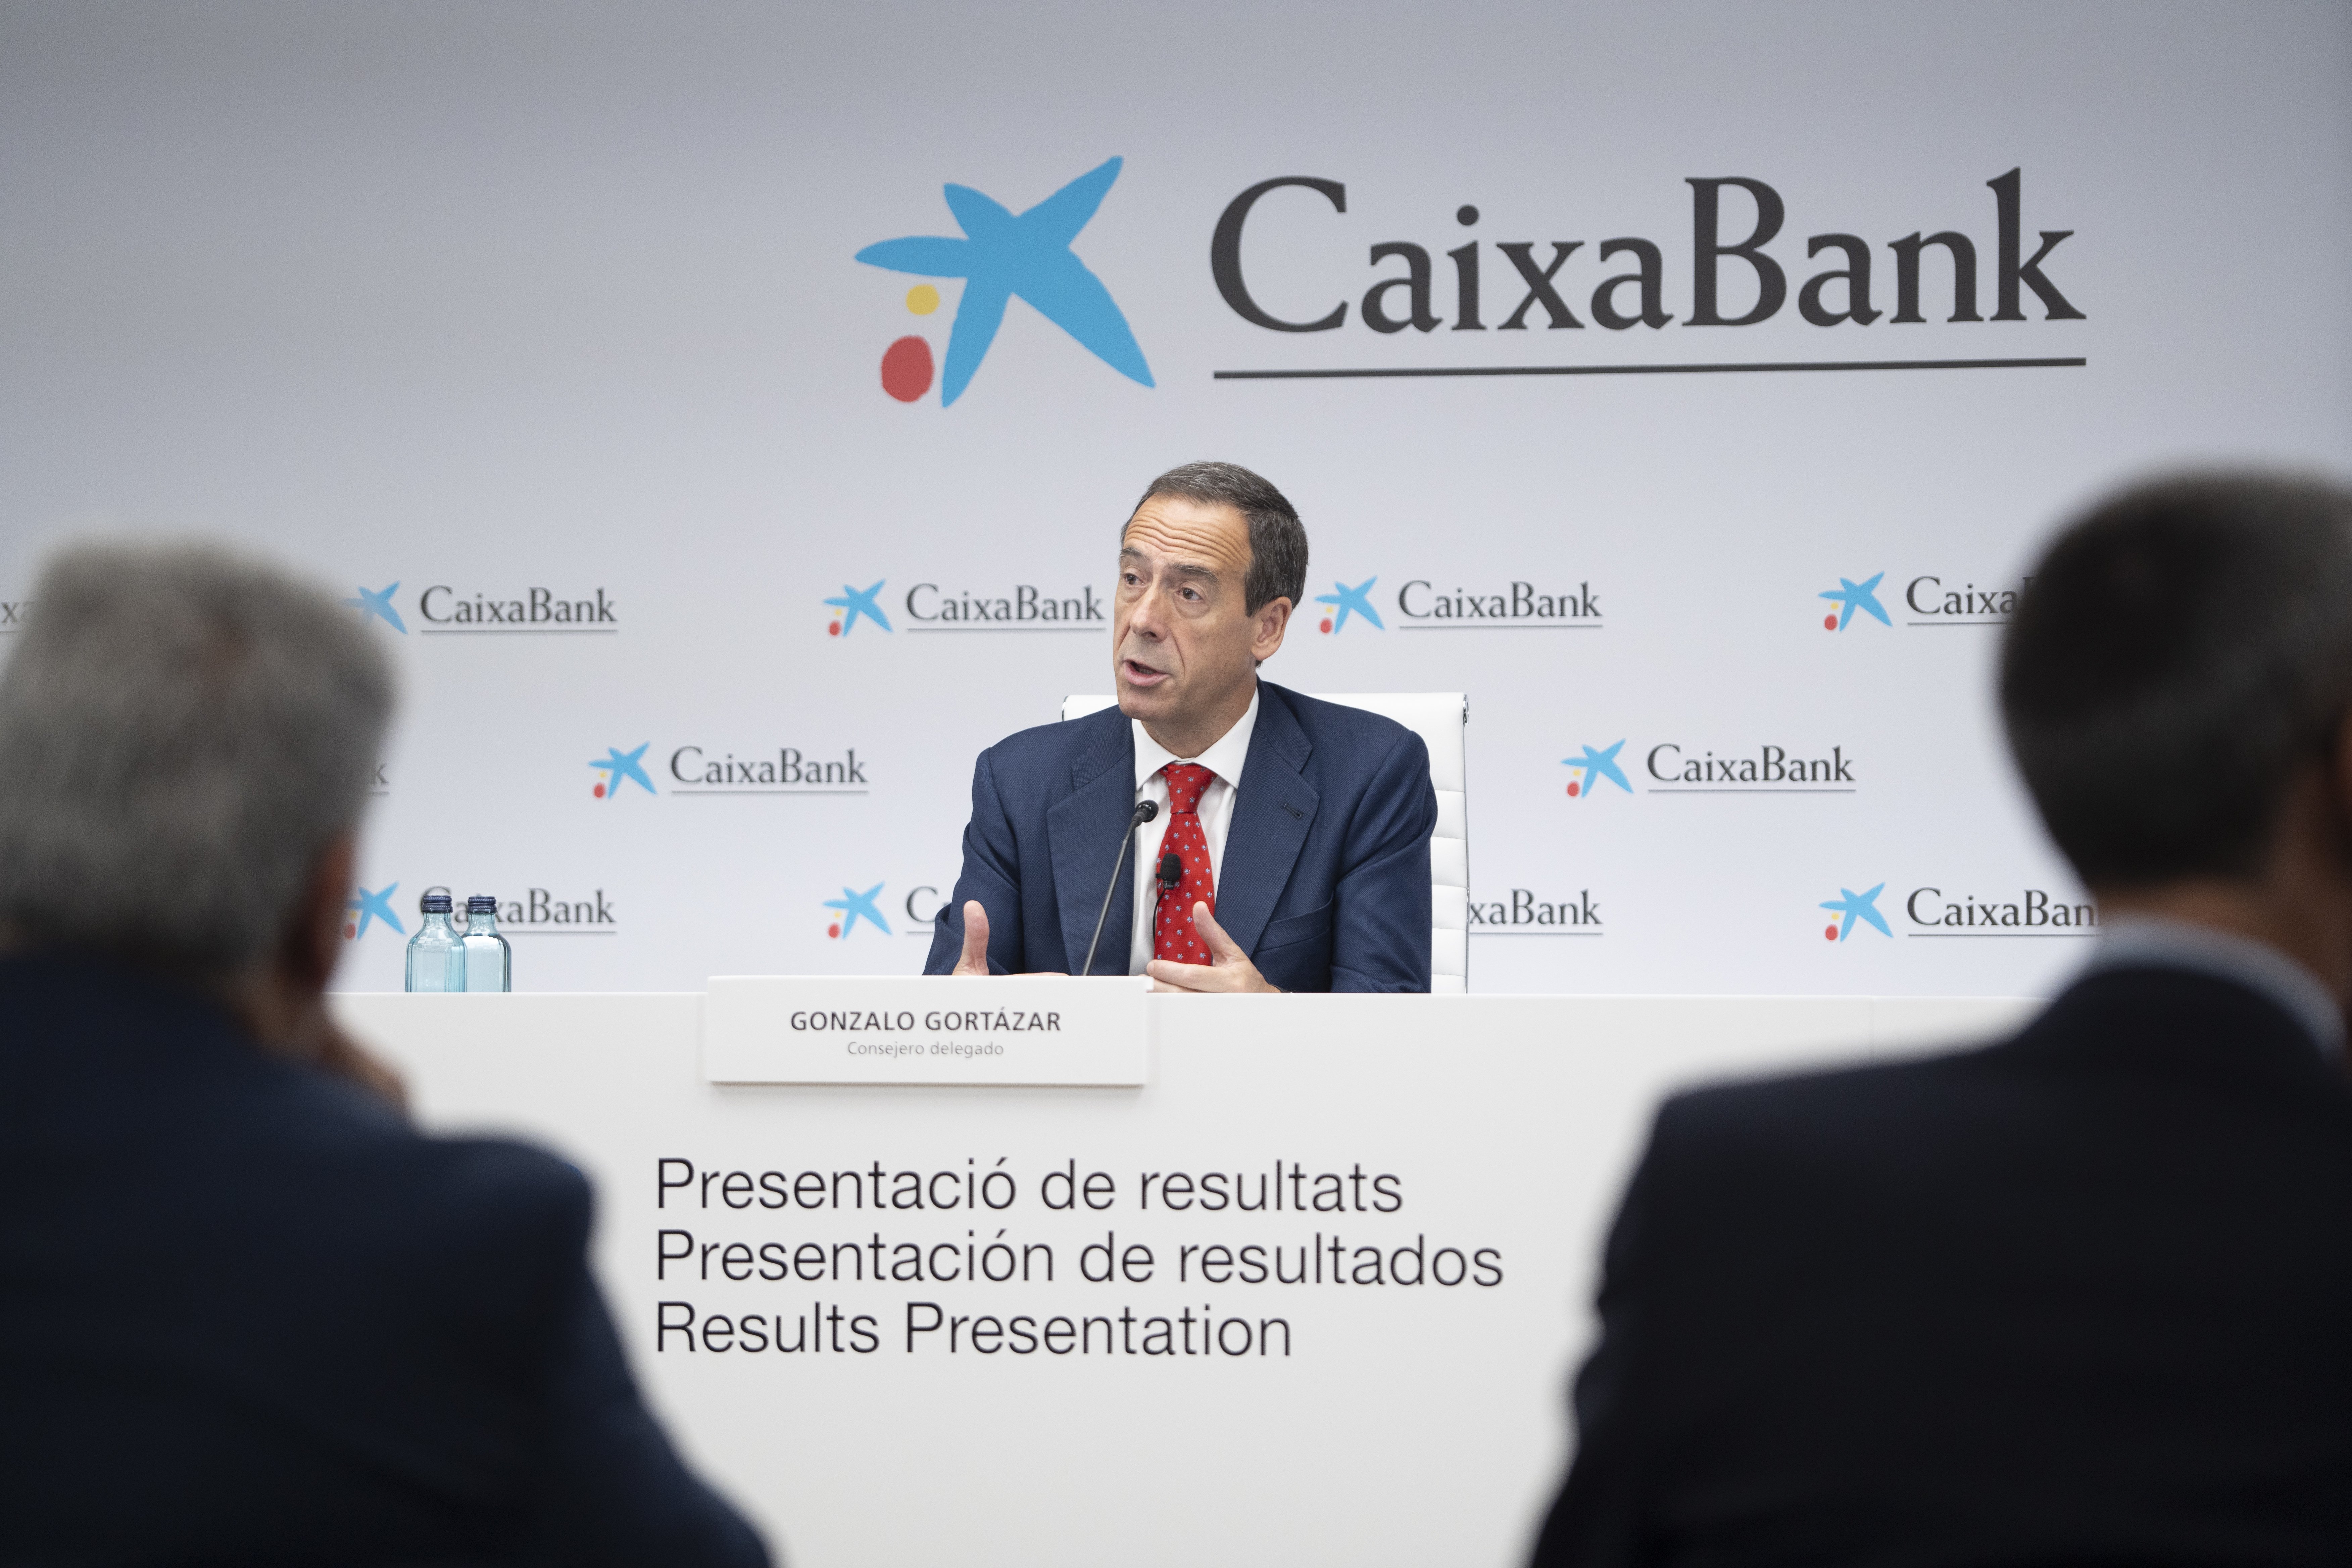 Gonzalo Gortázar (CaixaBank): "L'Estat no sortirà de l'accionariat a curt termini"